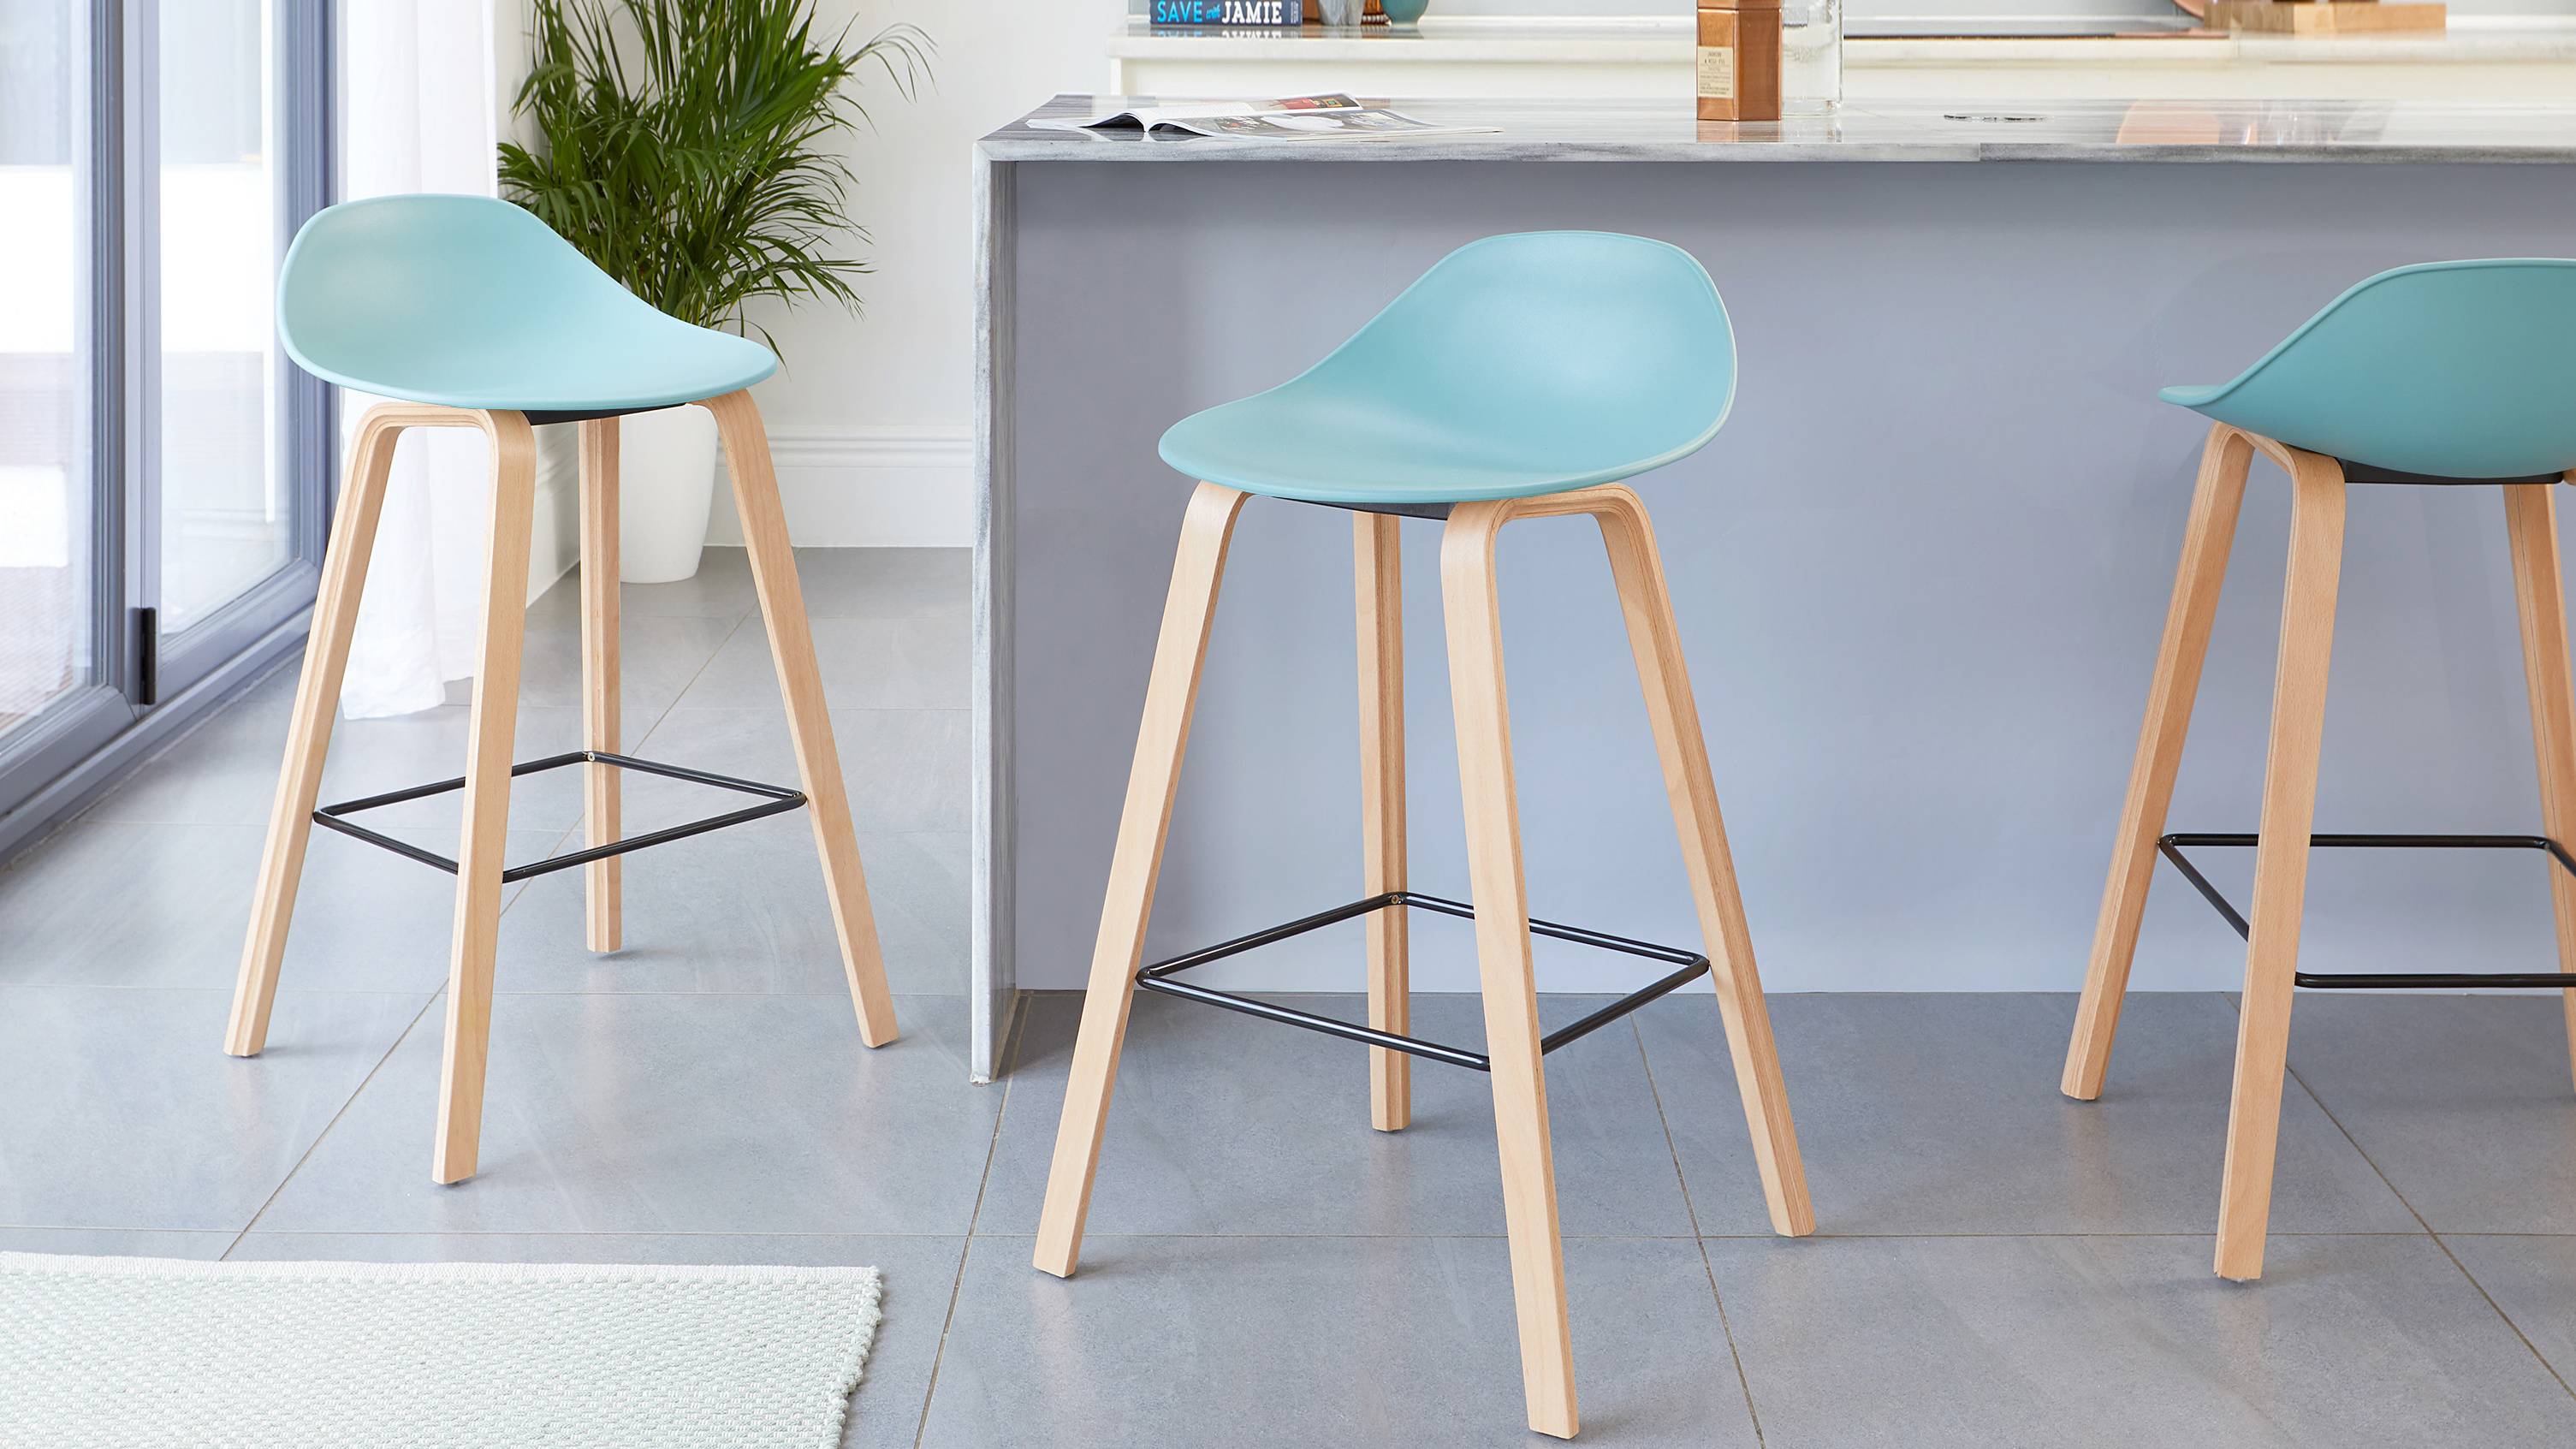 Aqua wooden bar stools